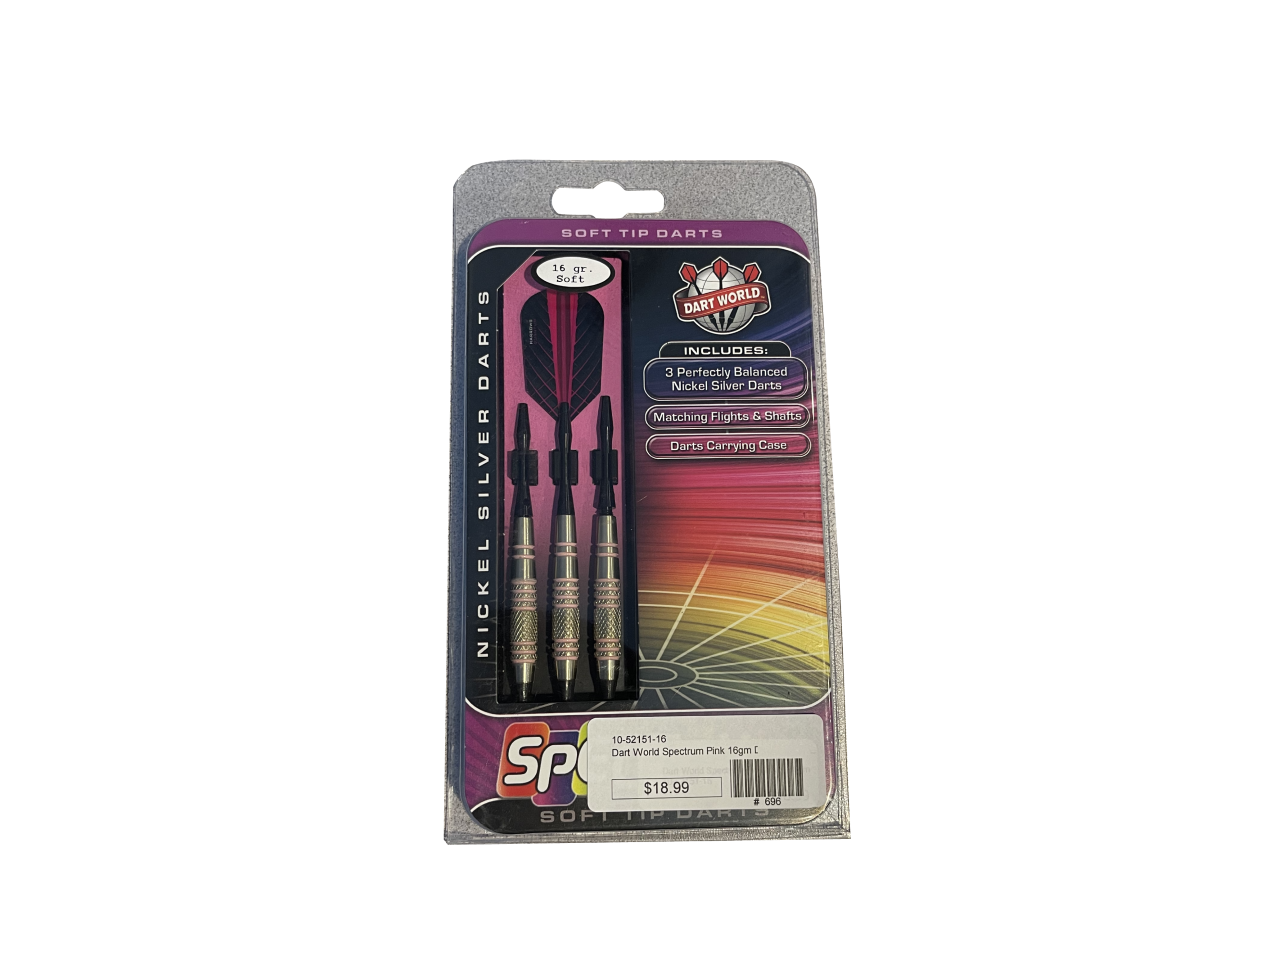 Dart World Spectrum Pink Soft Tip Darts Set - 16 gm